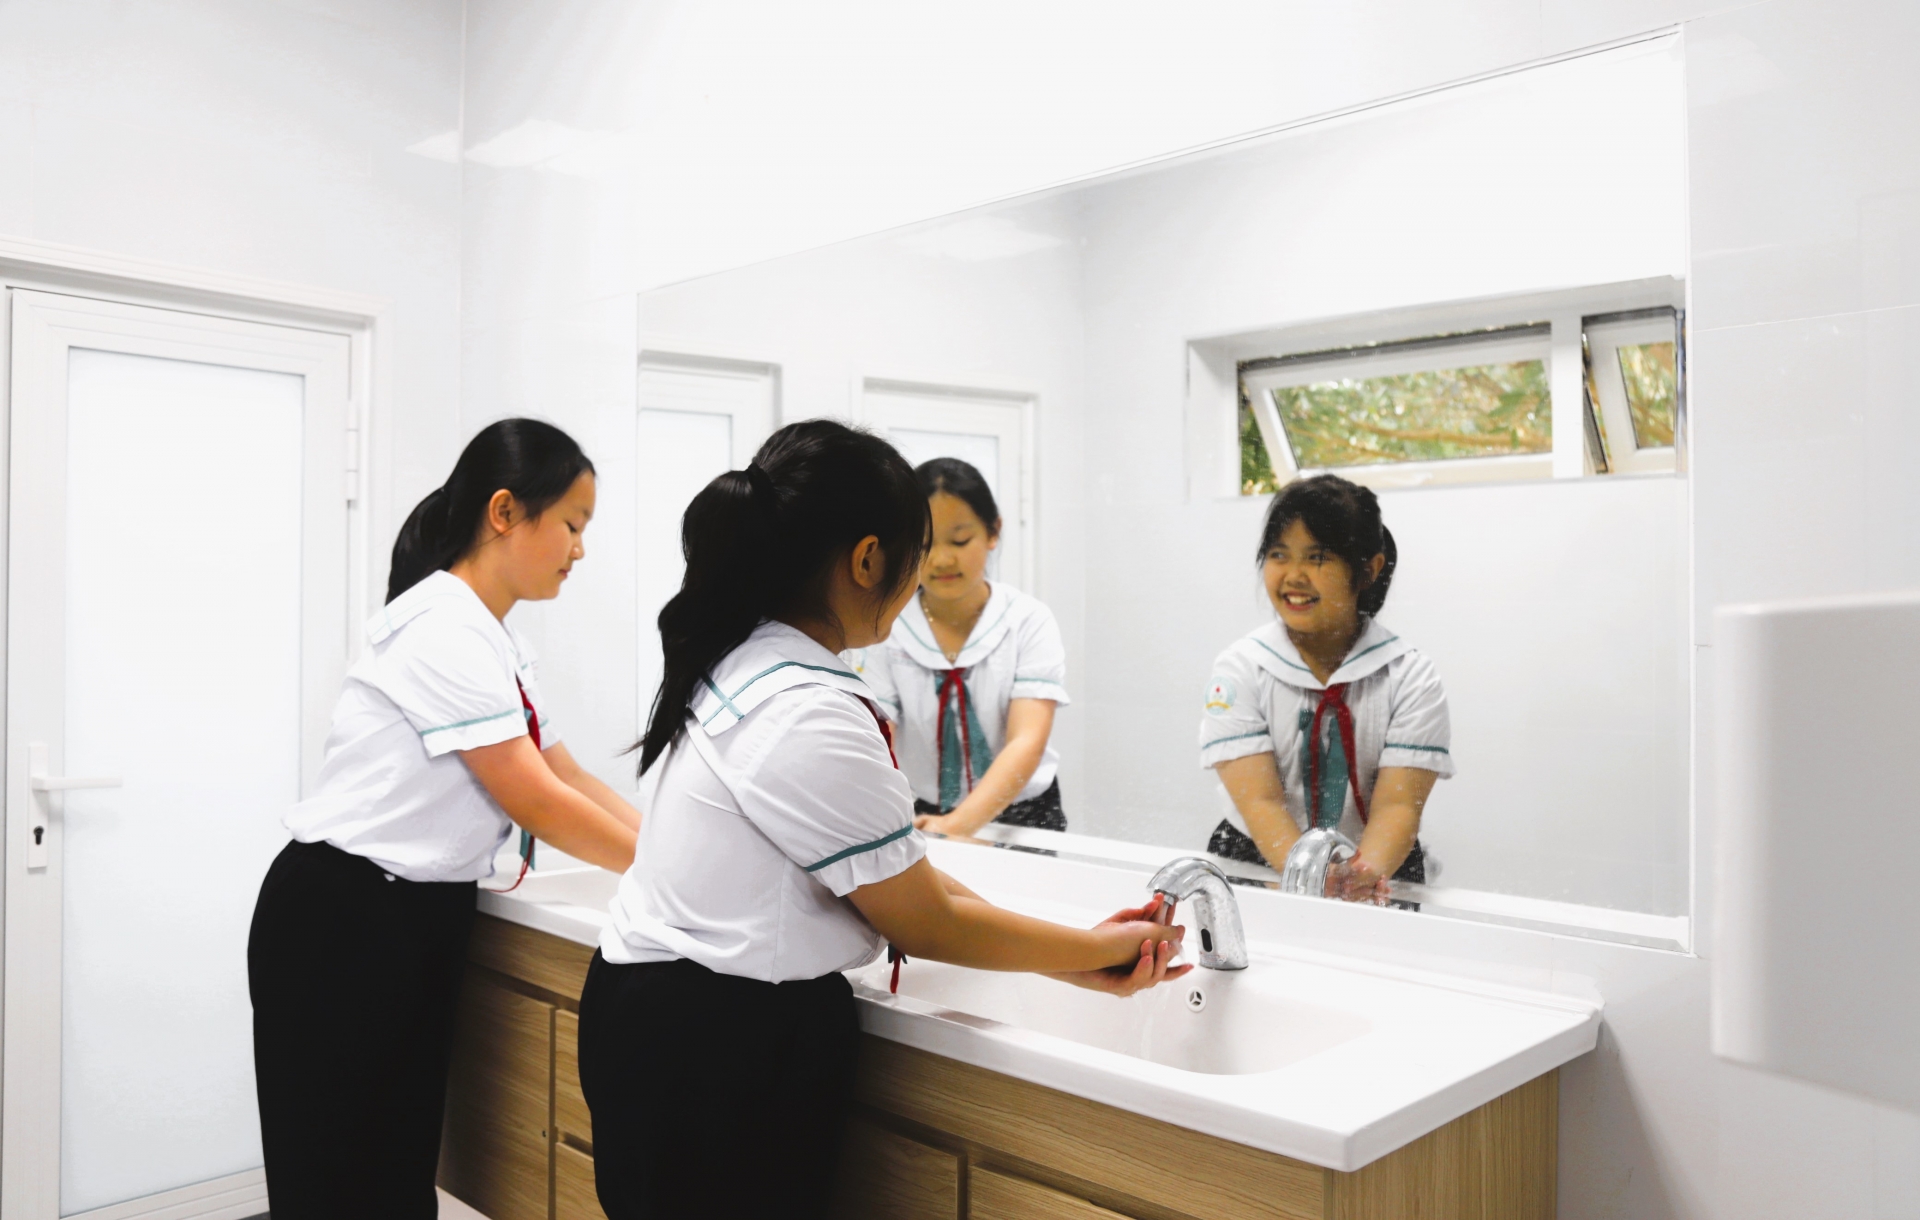 Nhà vệ sinh được xây dựng bằng các trang, thiết bị cao cấp khang trang, sạch đẹp phục vụ cho các em học sinh nữ khối 5